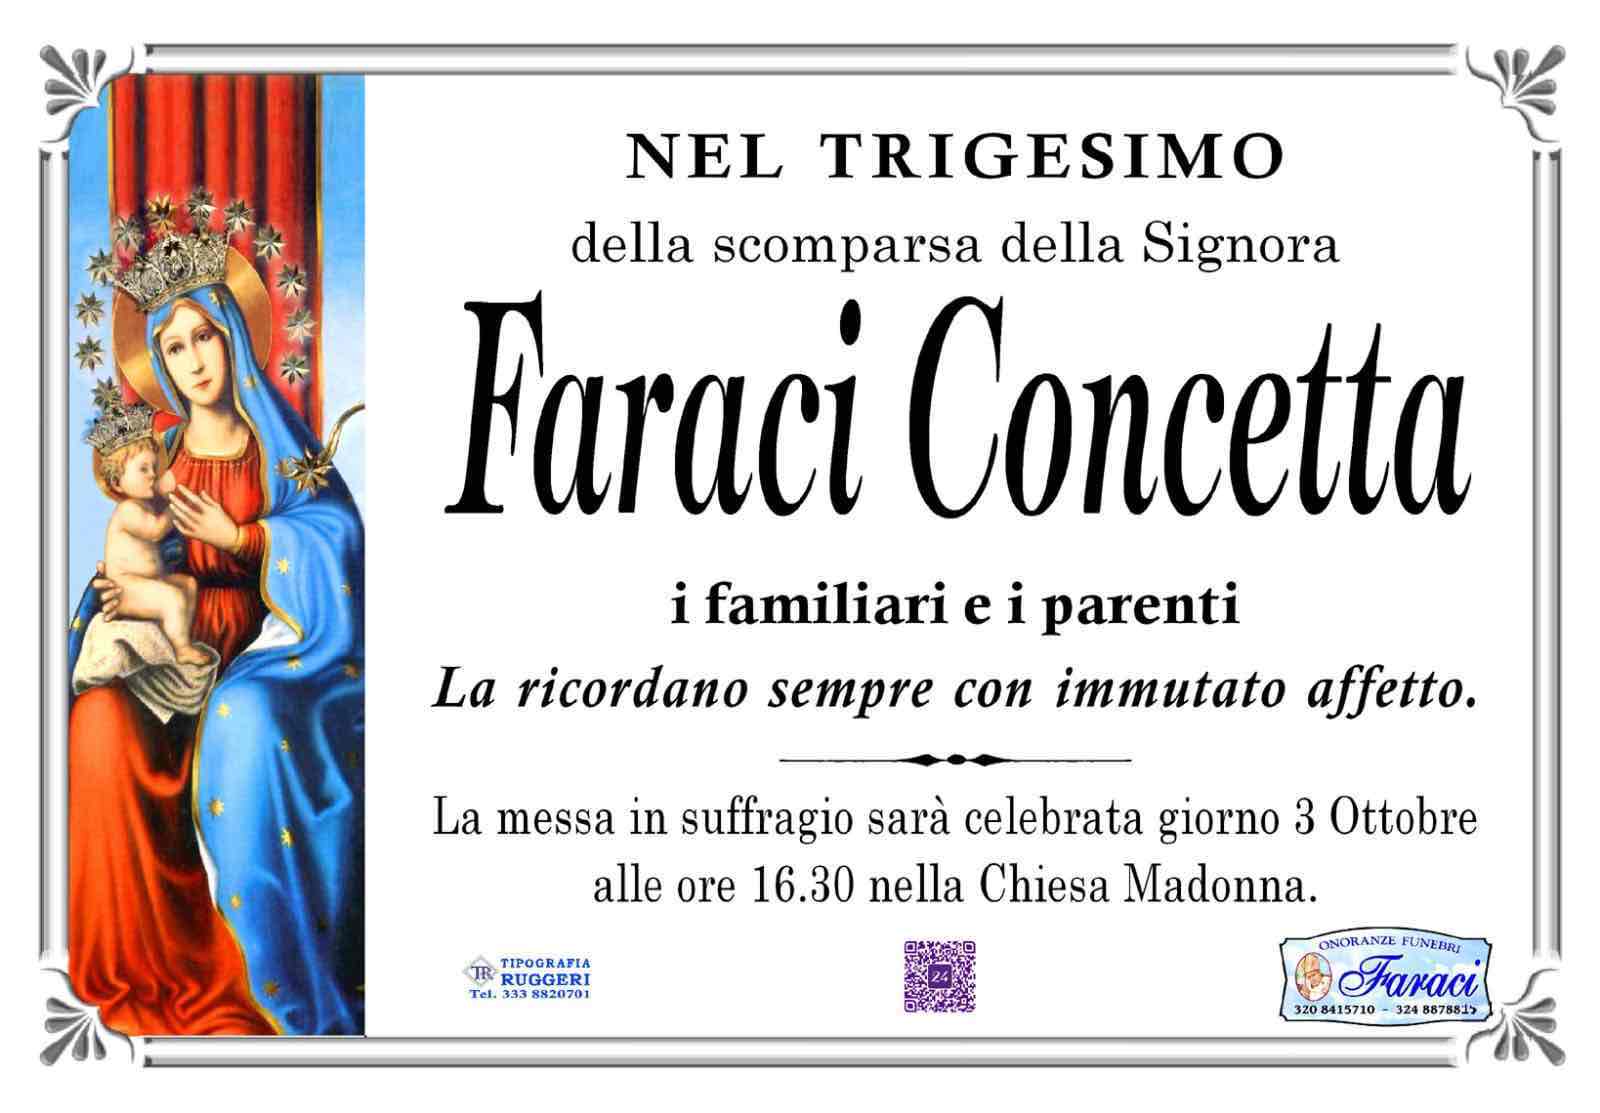 Concetta Faraci